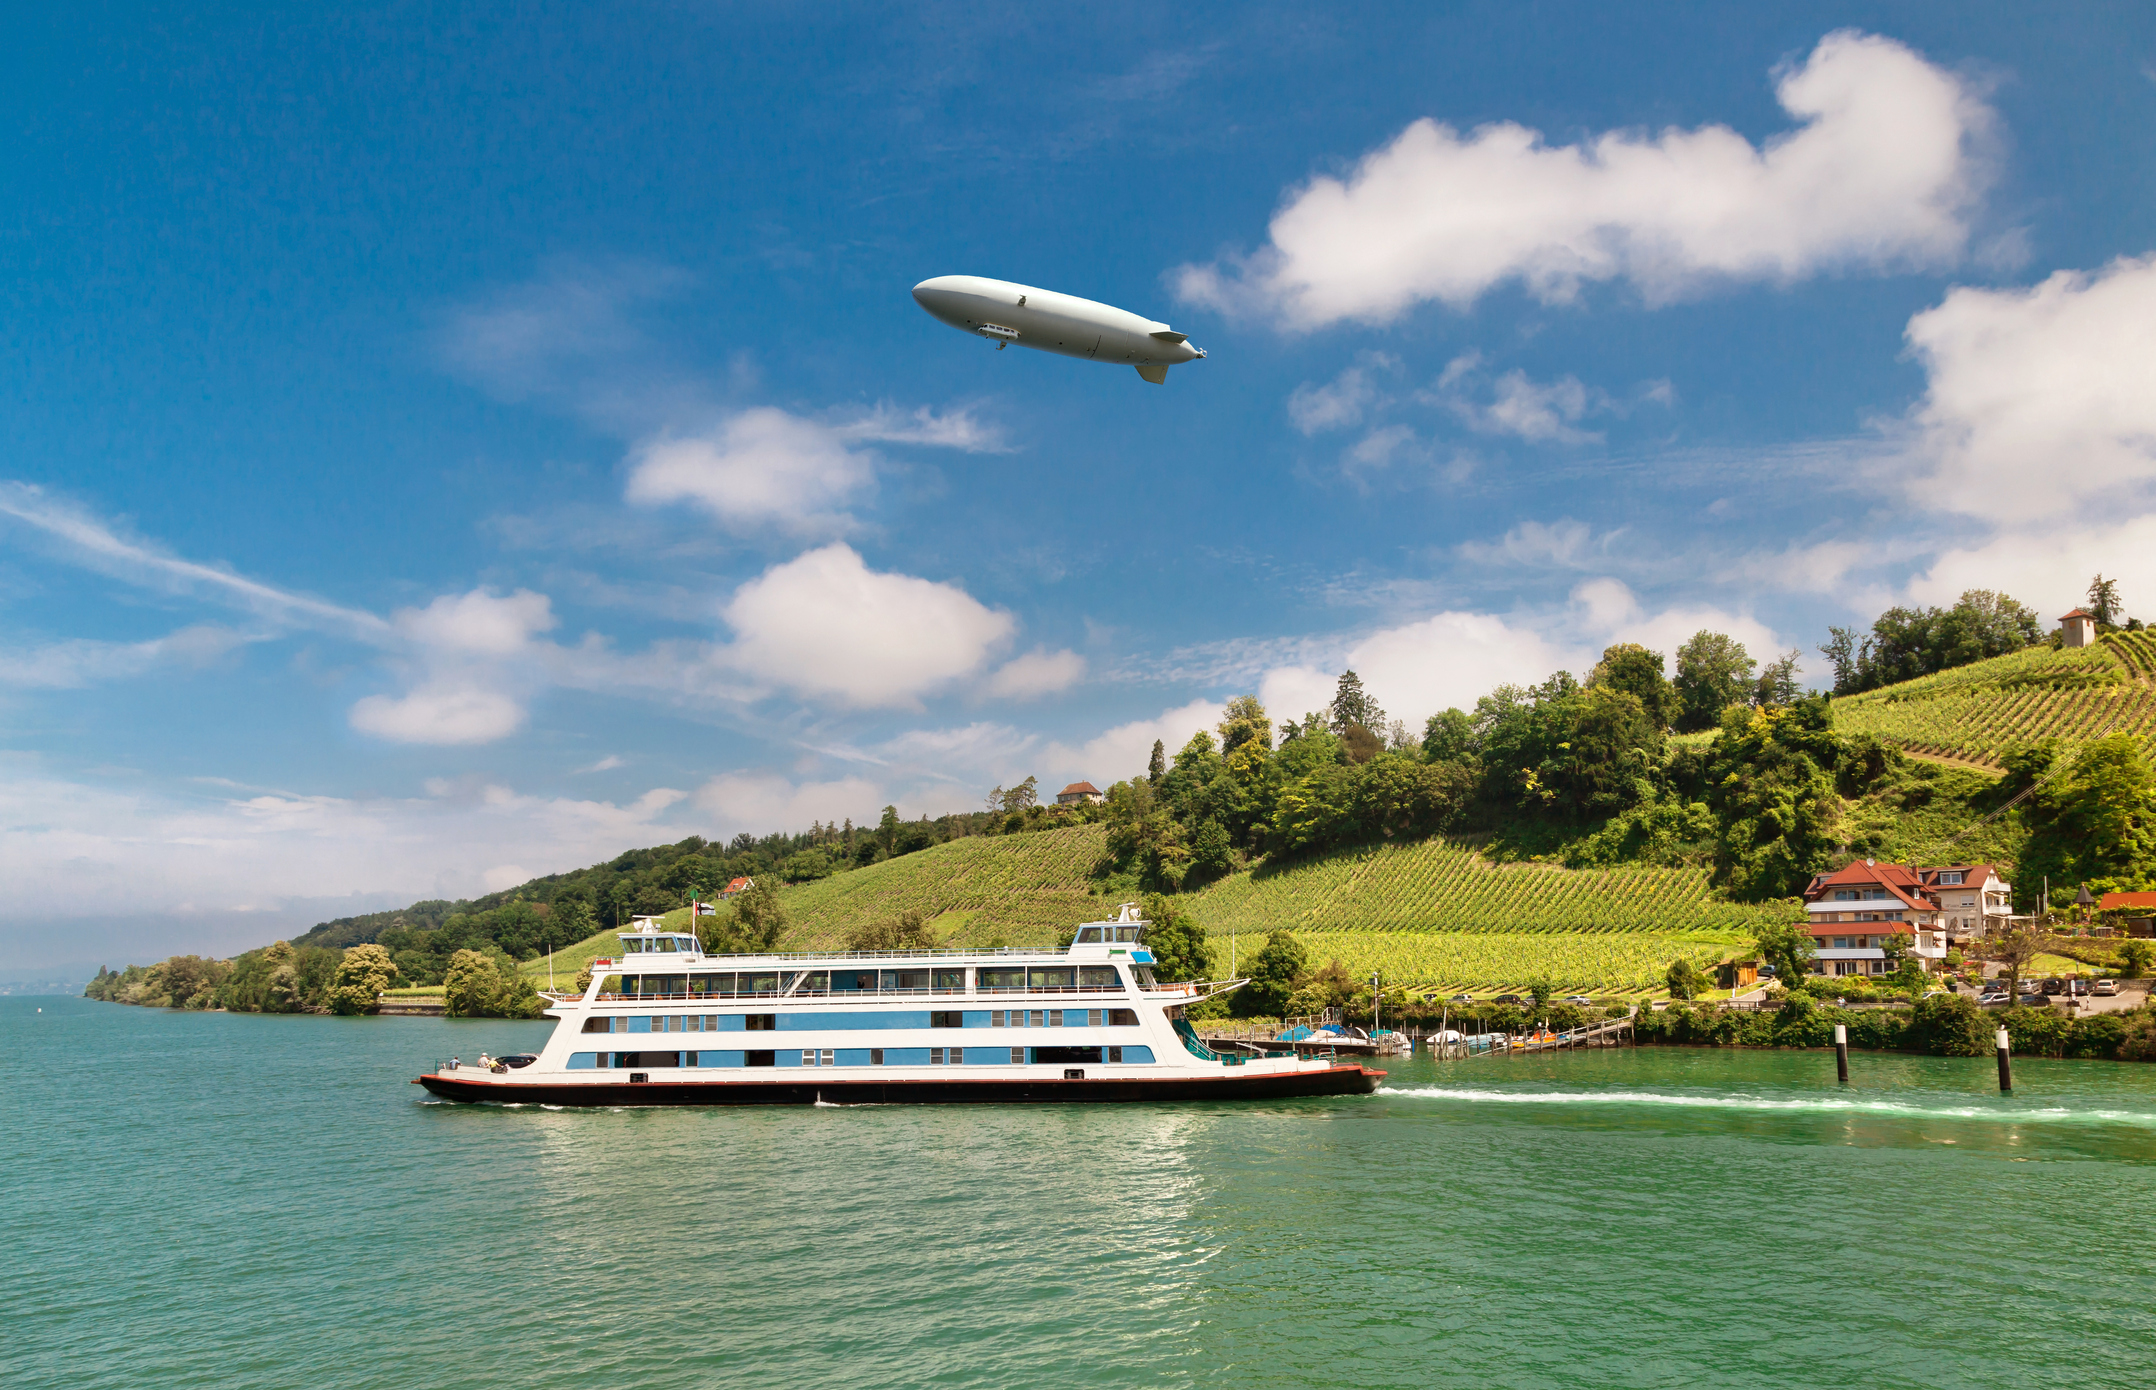 En Zeppelin svæver over et flodlandskab med vinmarker og en færge.